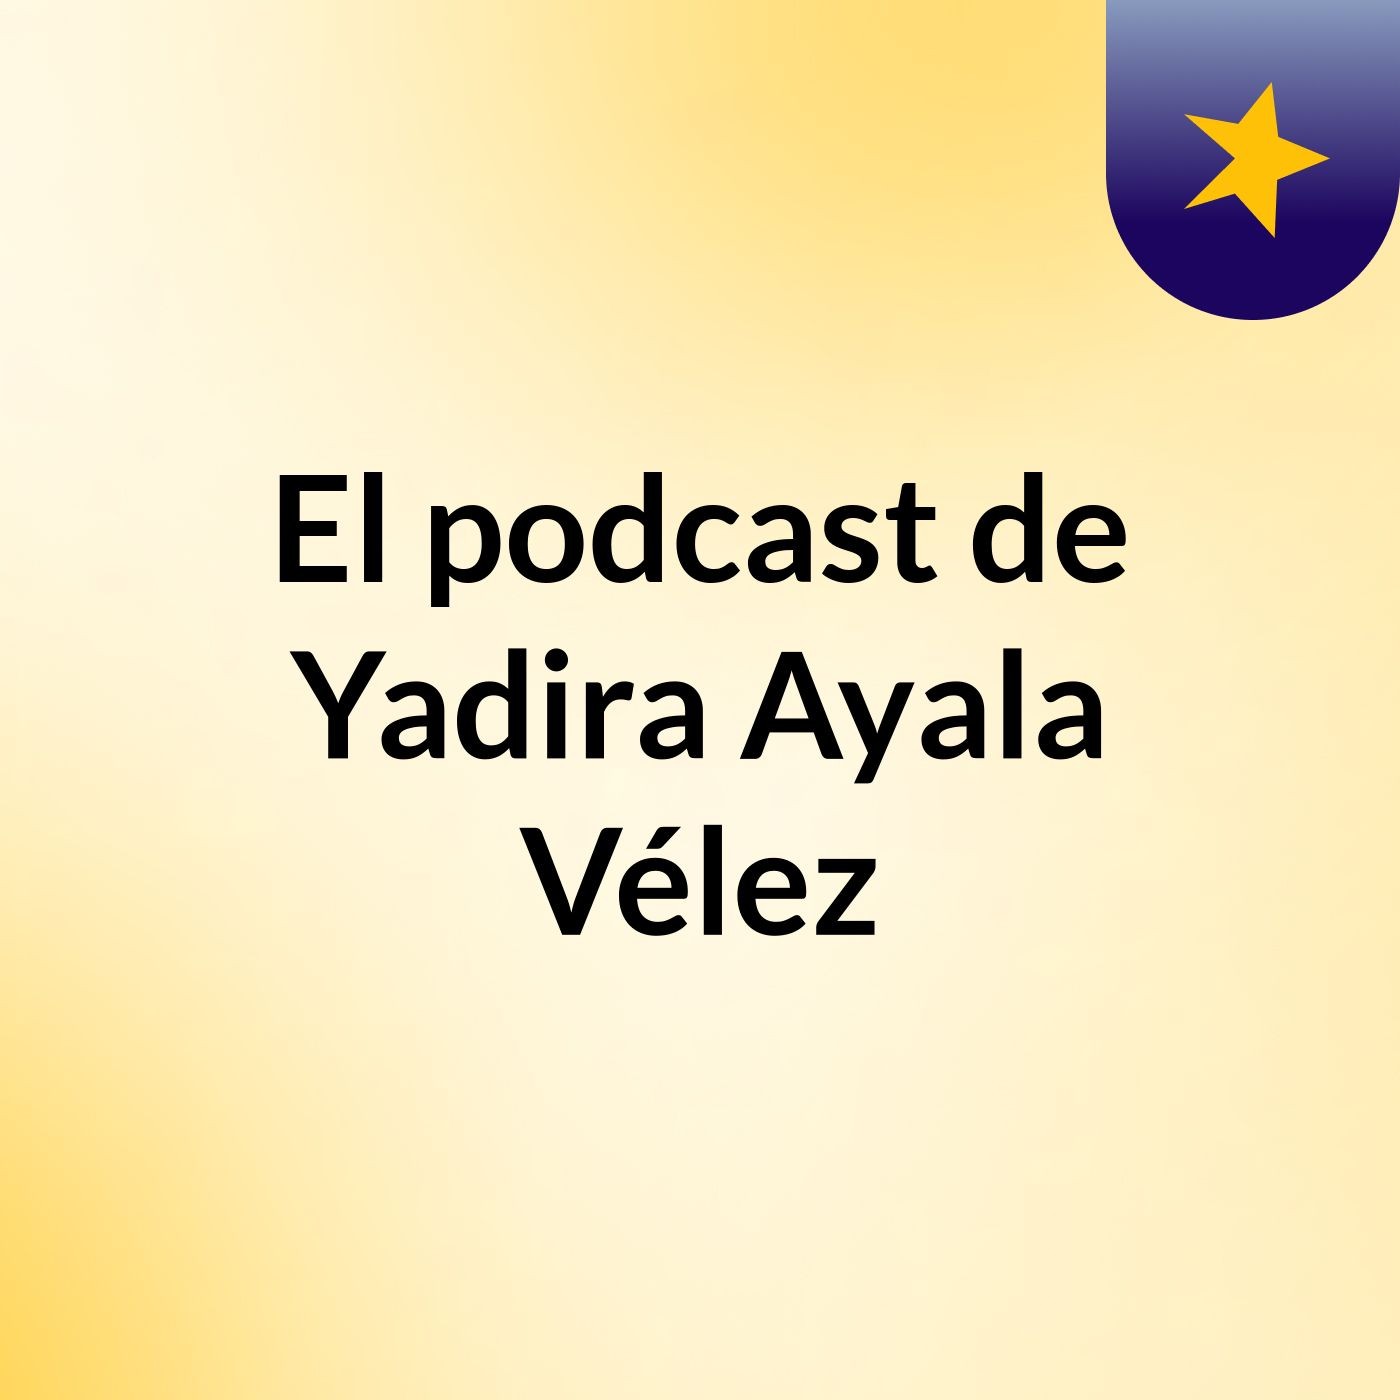 El podcast de Yadira Ayala Vélez